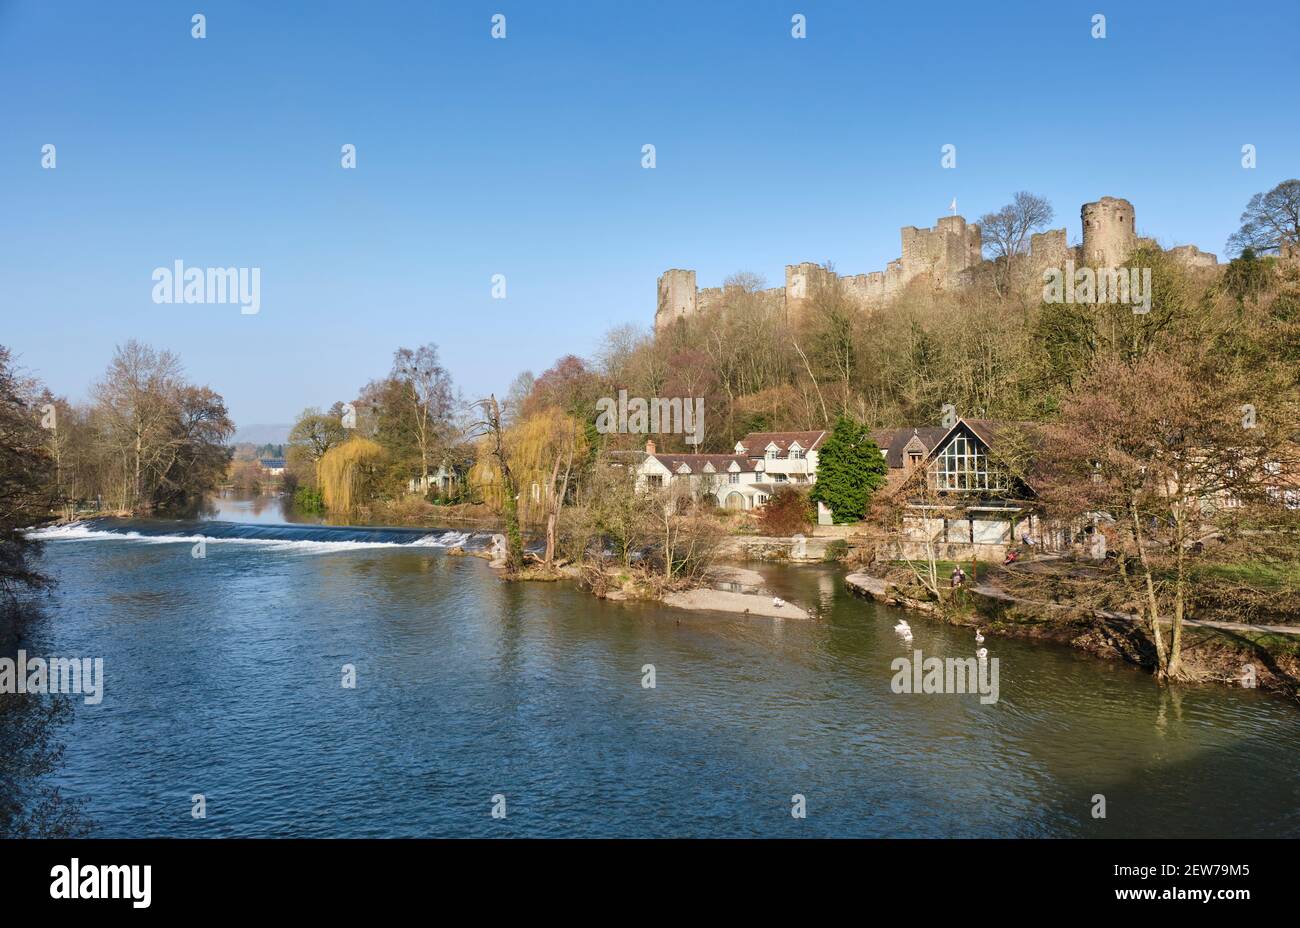 La rivière Teme à côté du château de Ludlow, Ludlow, Shropshire Banque D'Images